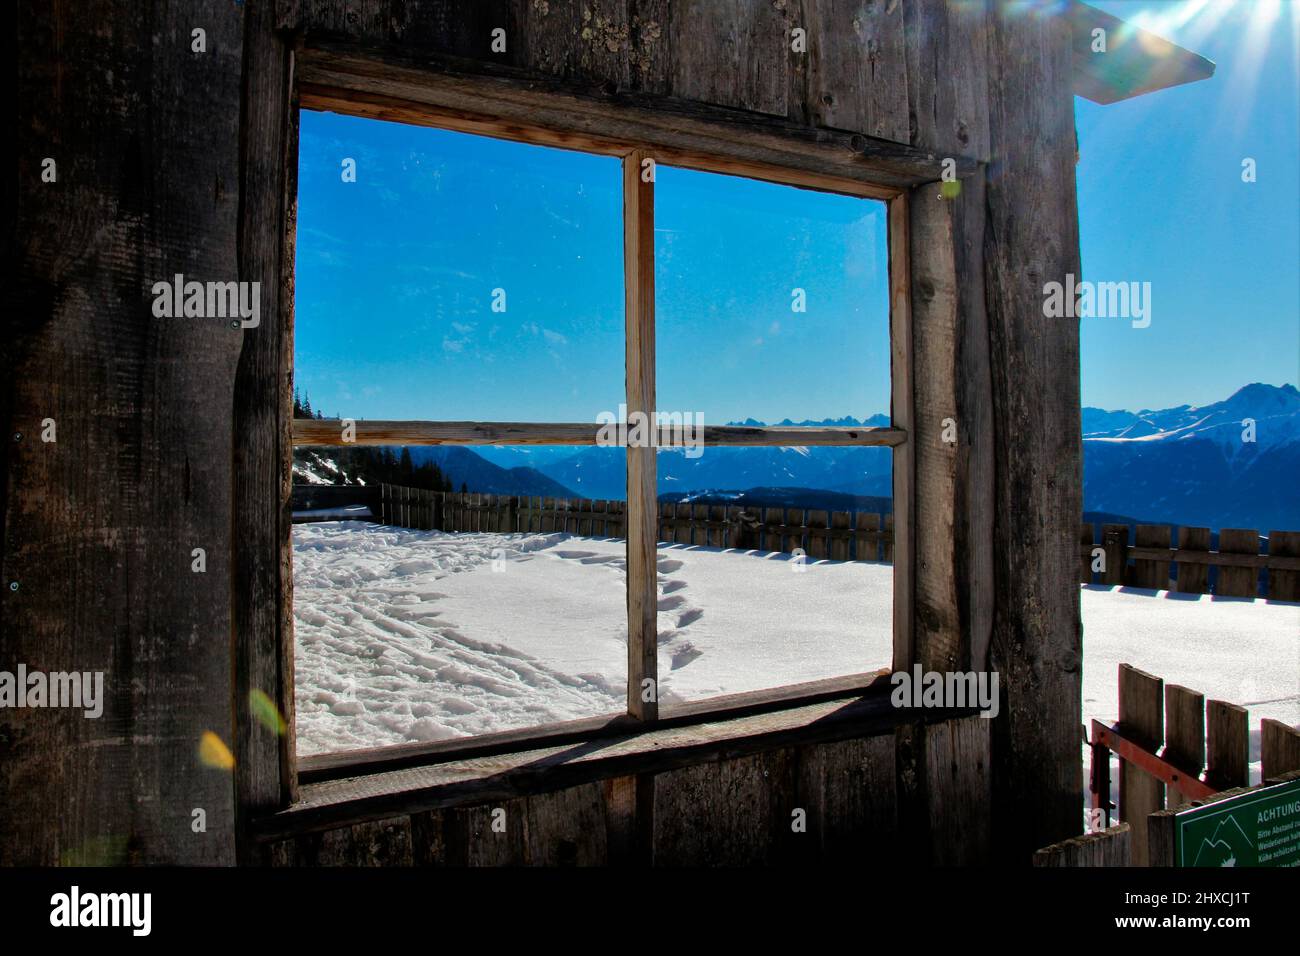 Winterwanderung zur Wang Alm im Gaistal, Fenster mit Bergpanorama, Österreich, Tirol, Urlaub, Winter, Traumwetter Stockfoto